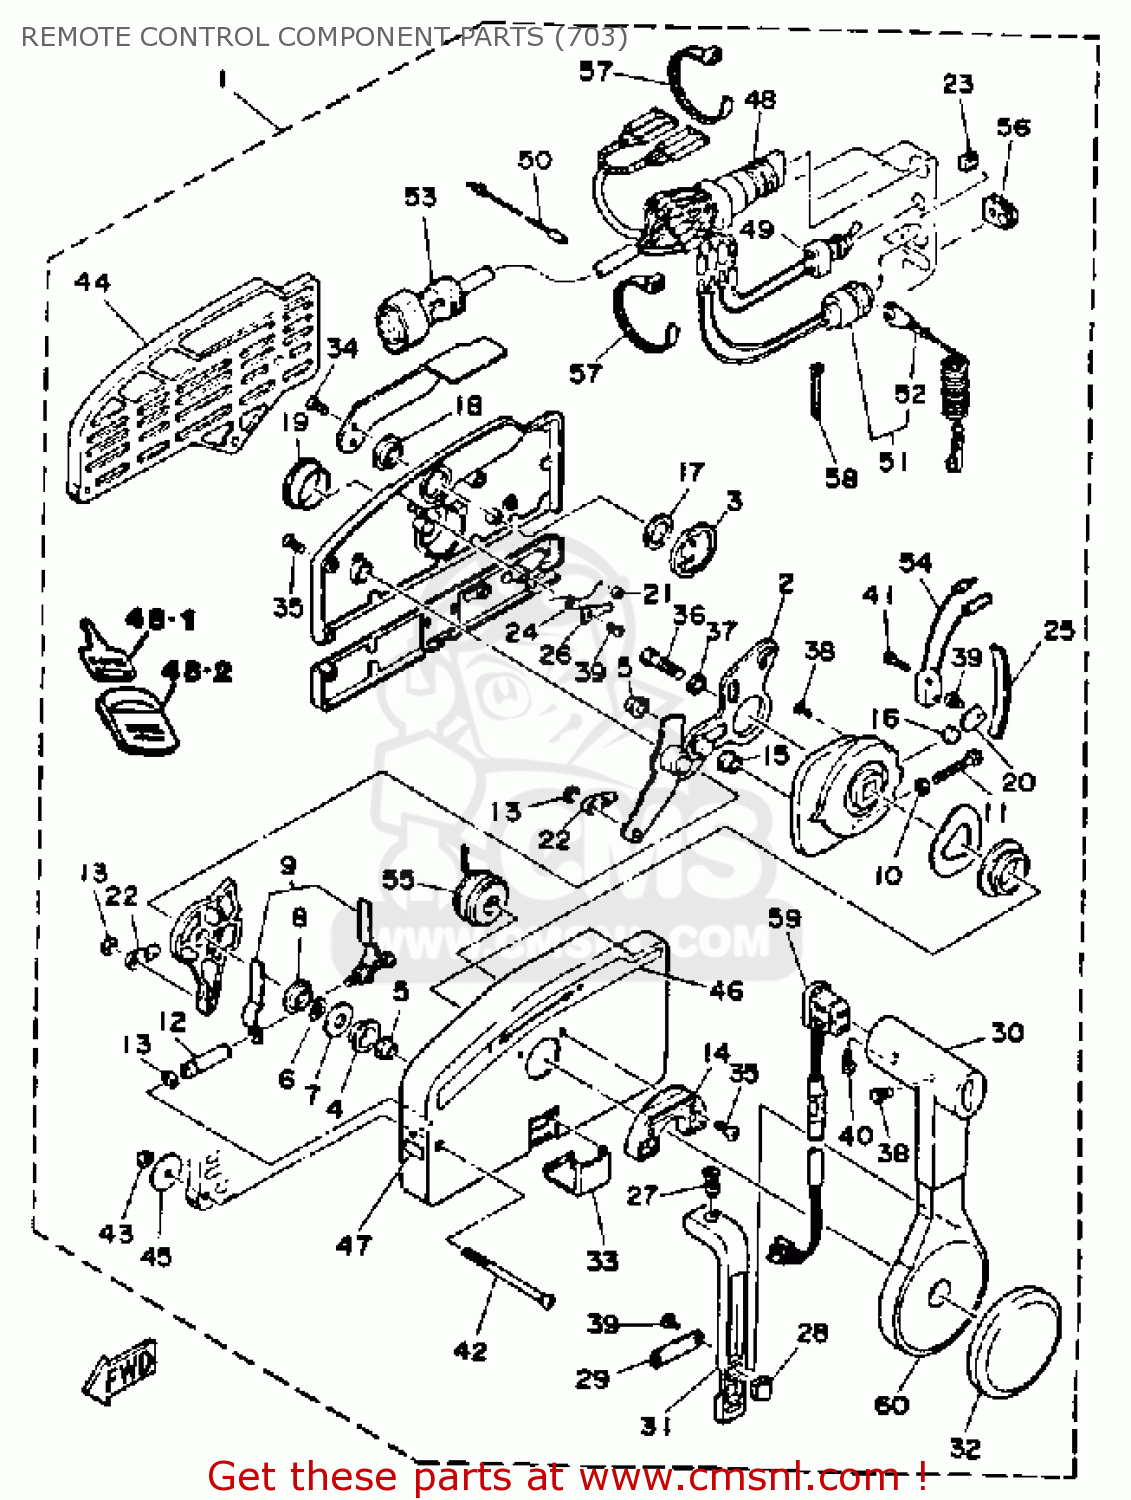 yamaha 703 wiring diagram